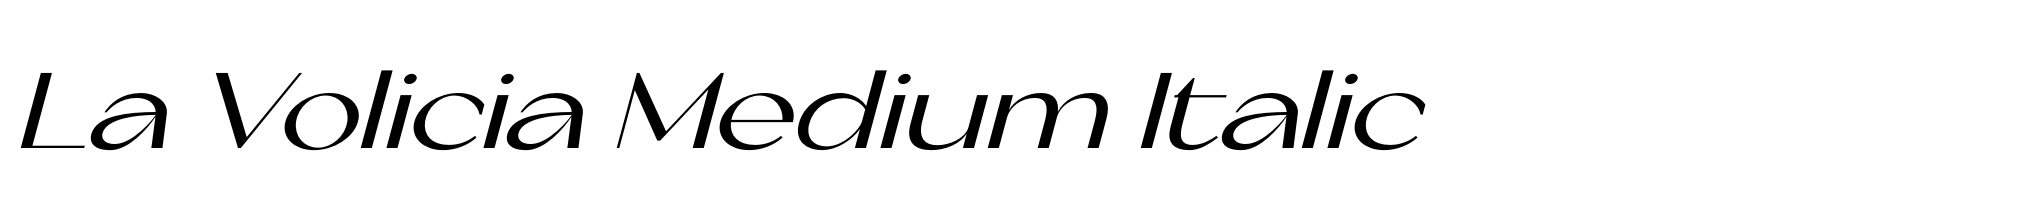 La Volicia Medium Italic image